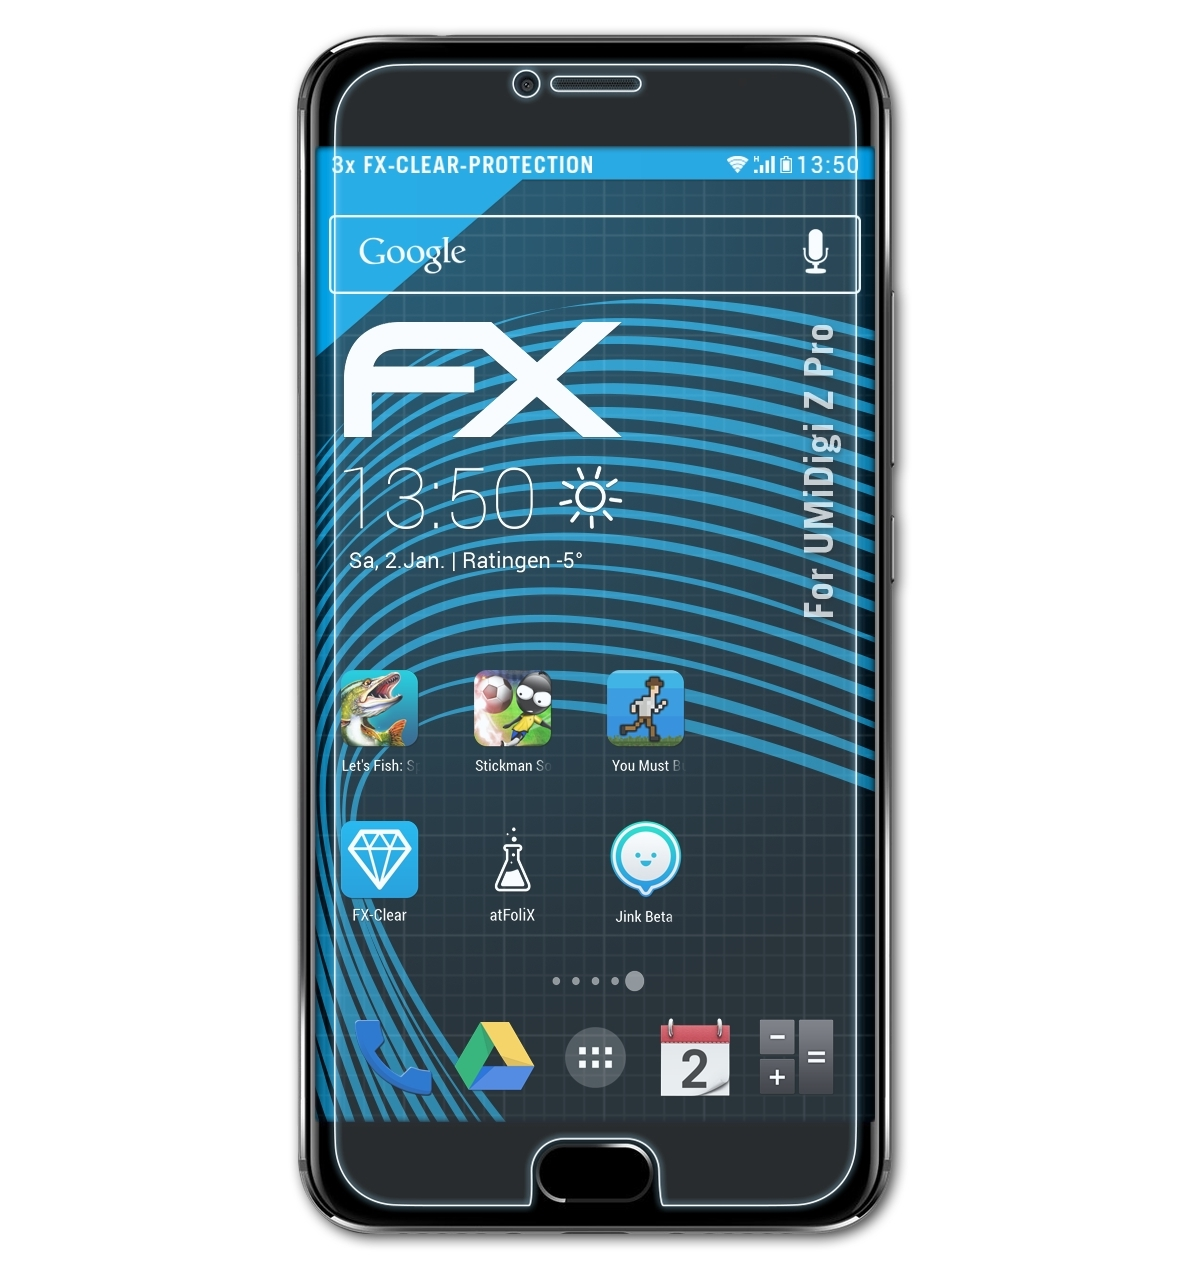 FX-Clear UMiDigi Displayschutz(für ATFOLIX Z Pro) 3x